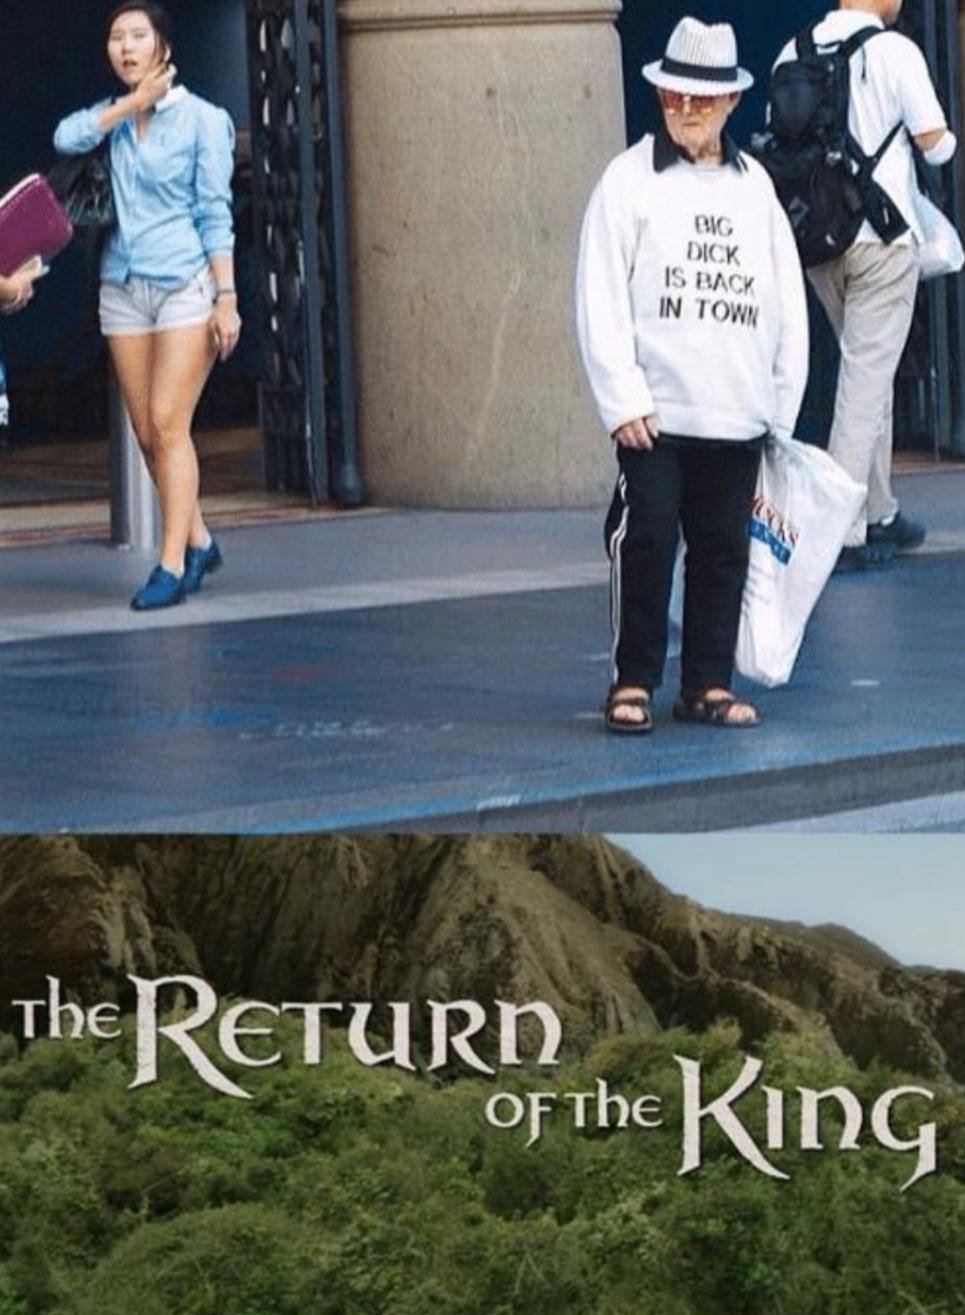 Le retour du roi. - meme